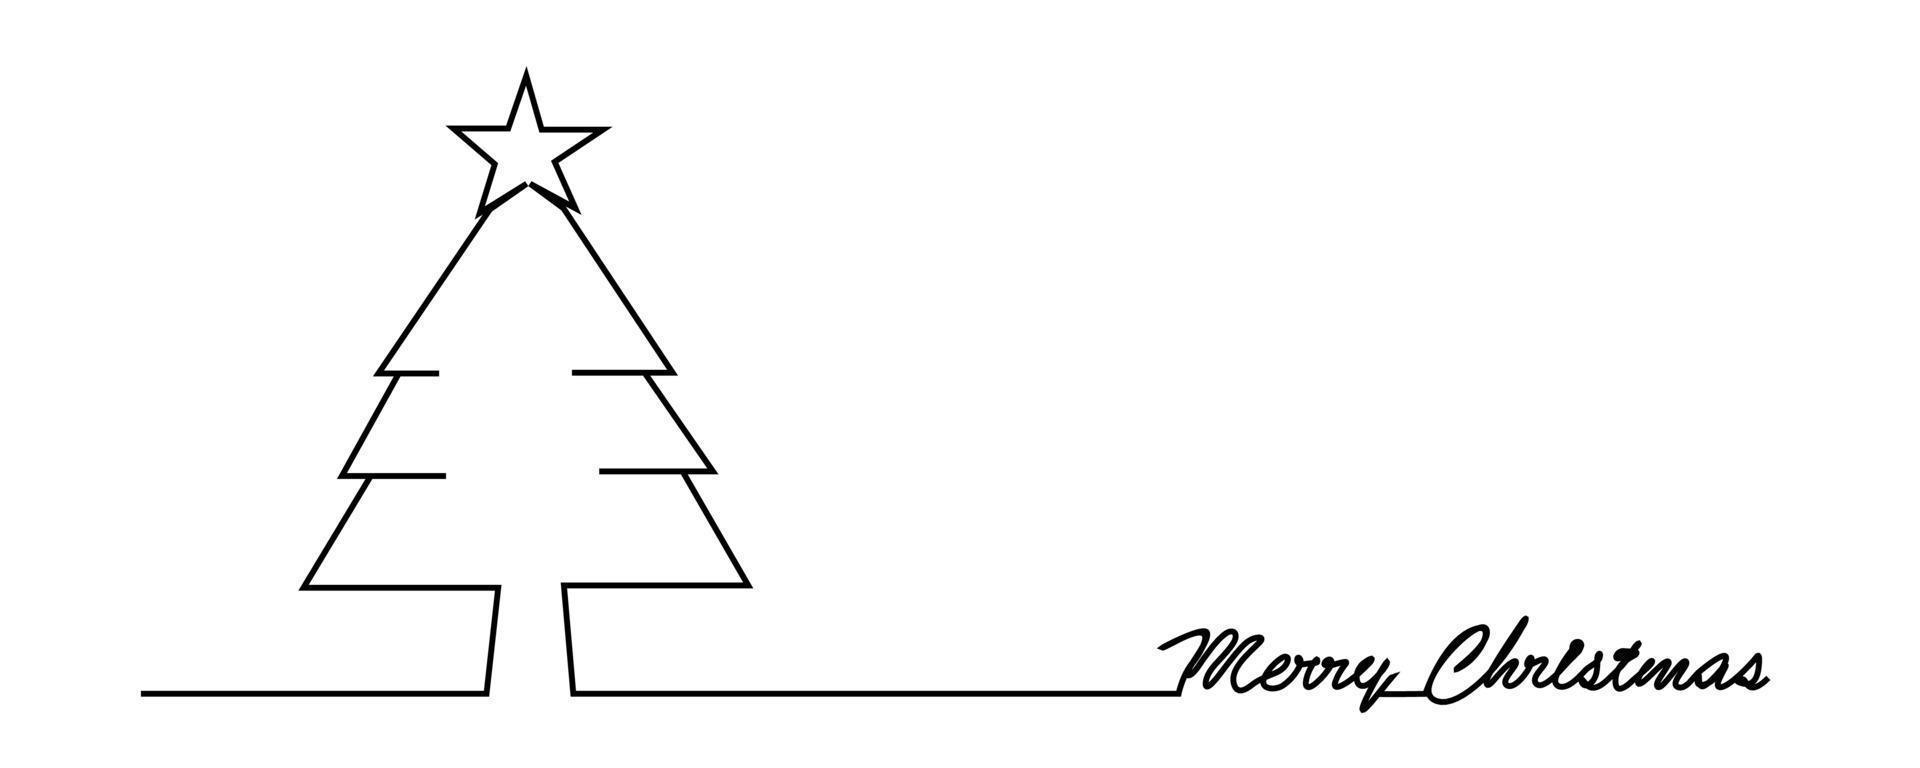 pino de navidad abeto. diseño minimalista de dibujo continuo de una línea vector